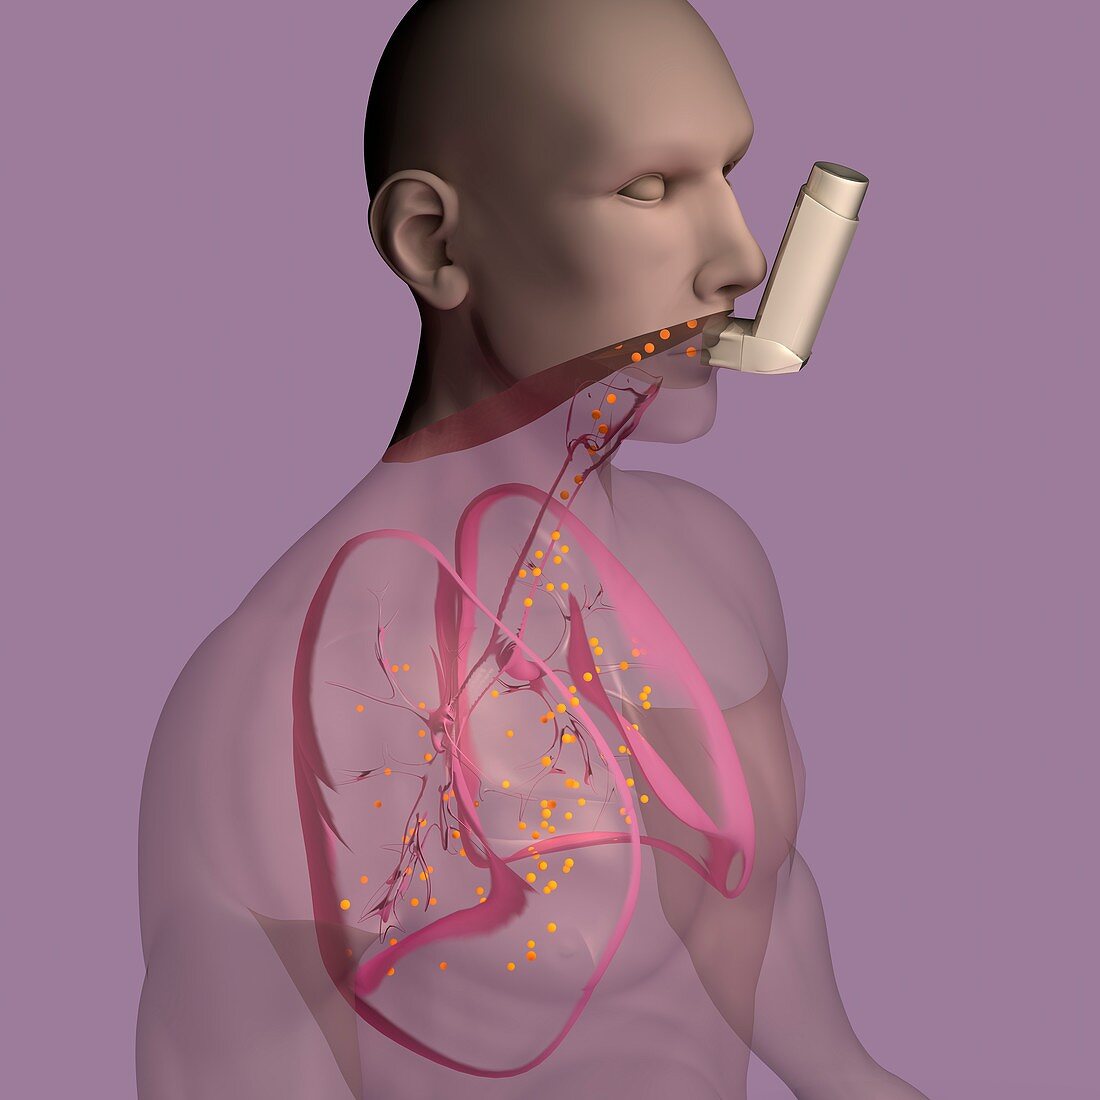 Inhaler use, illustration